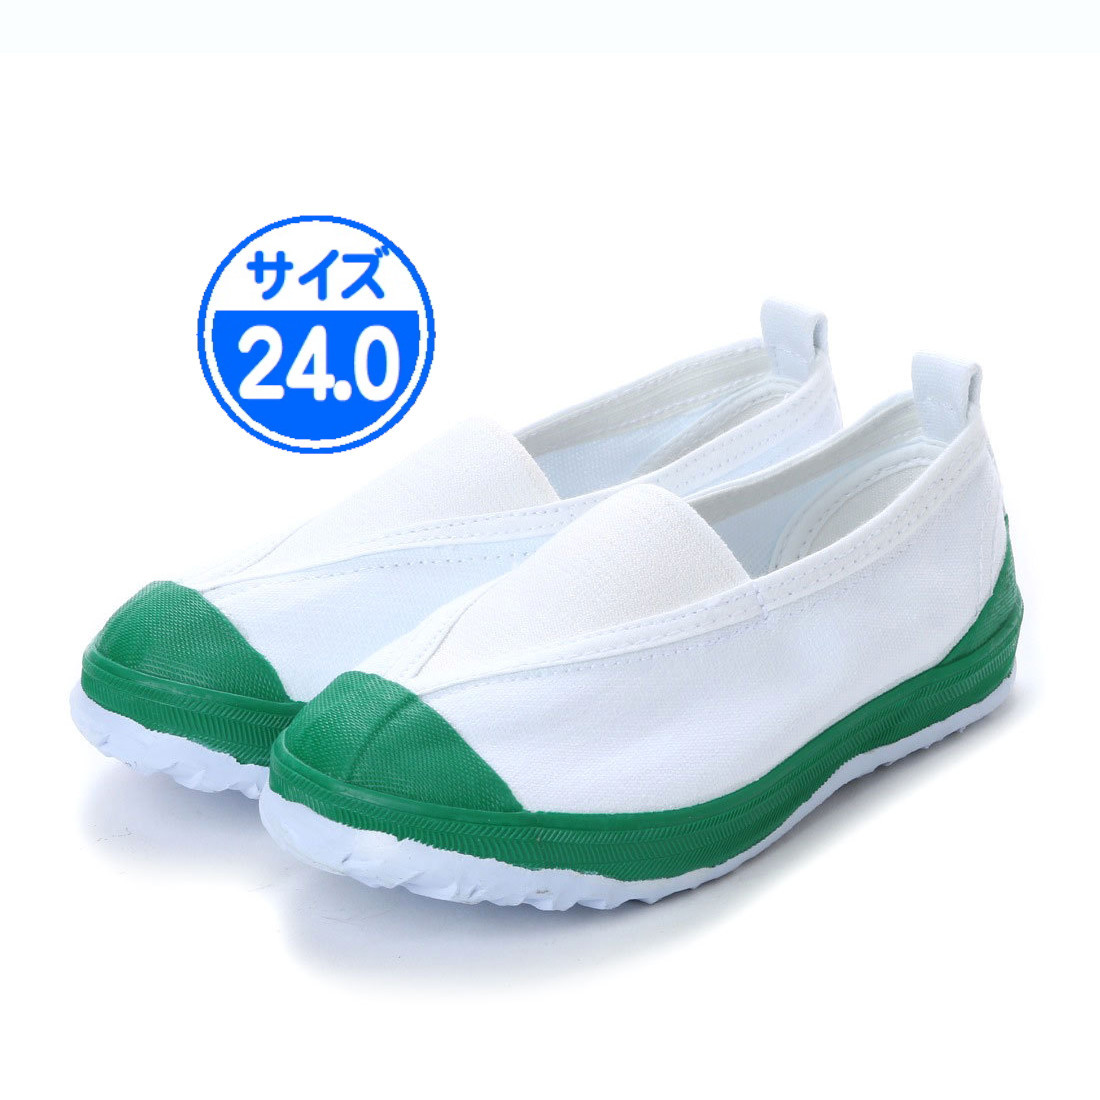 [ новый товар не использовался ]18999 сменная обувь зеленый 24.0cm зеленый 